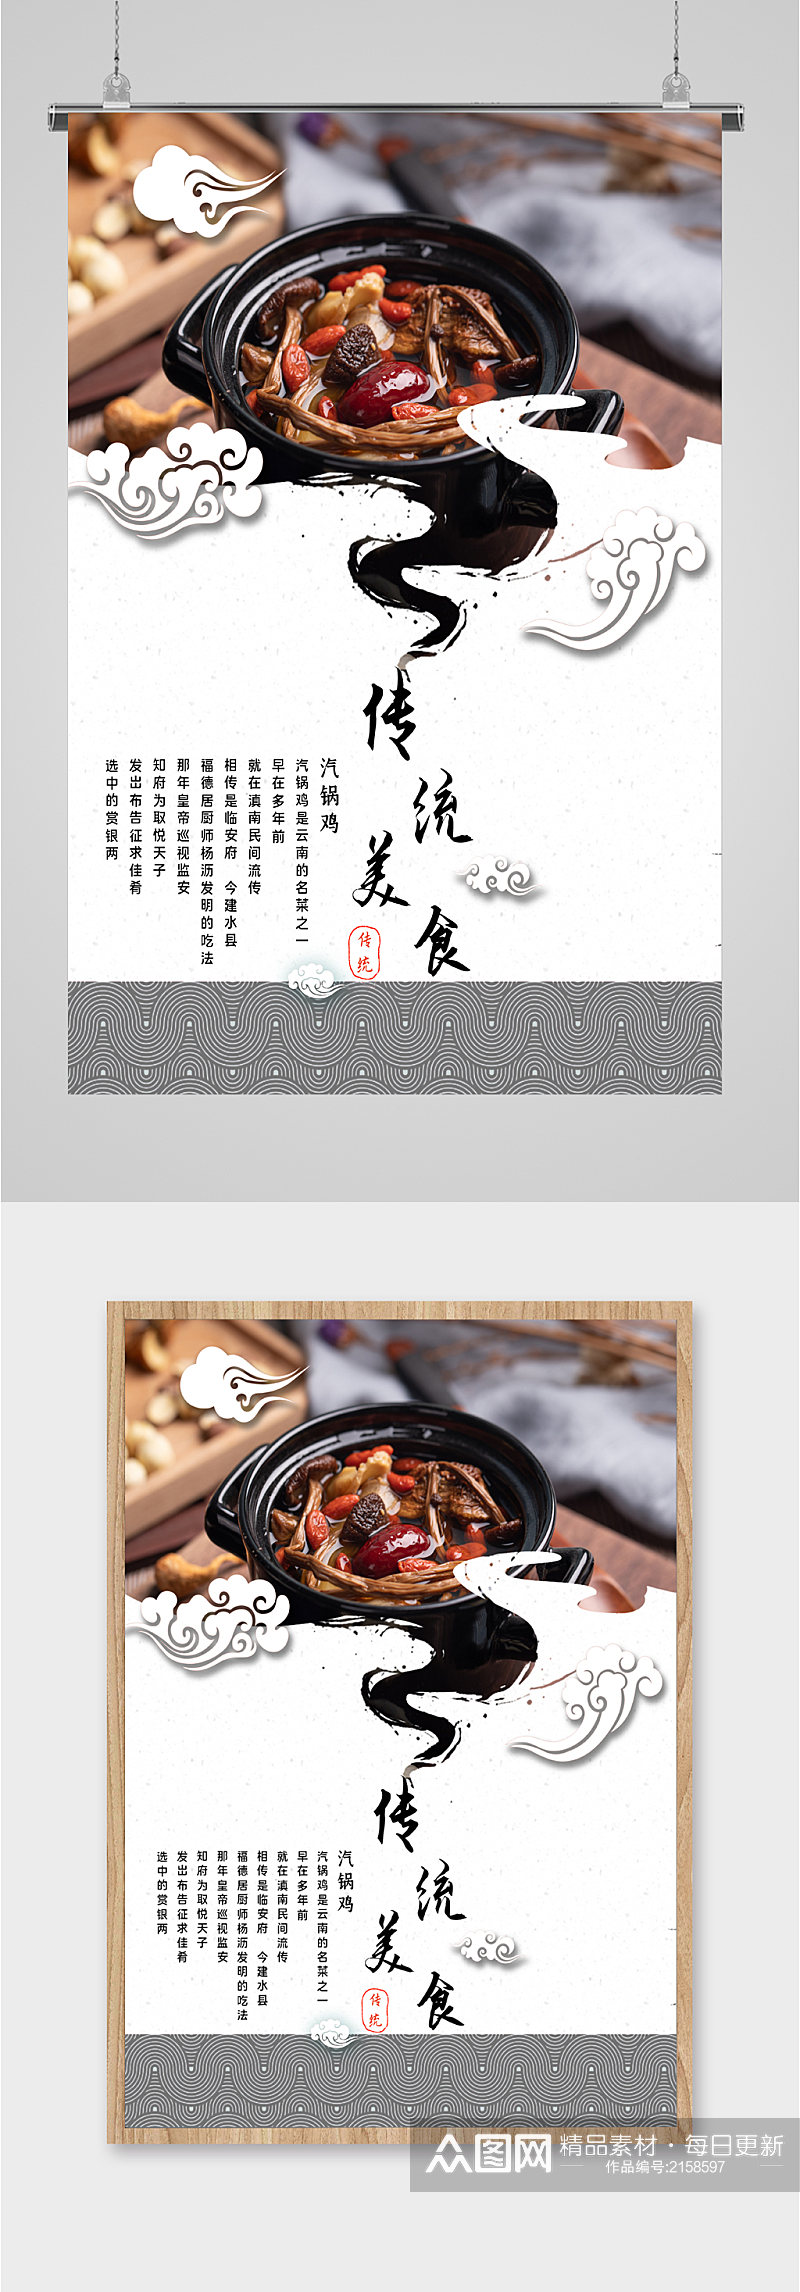 传统美食汽锅鸡海报素材